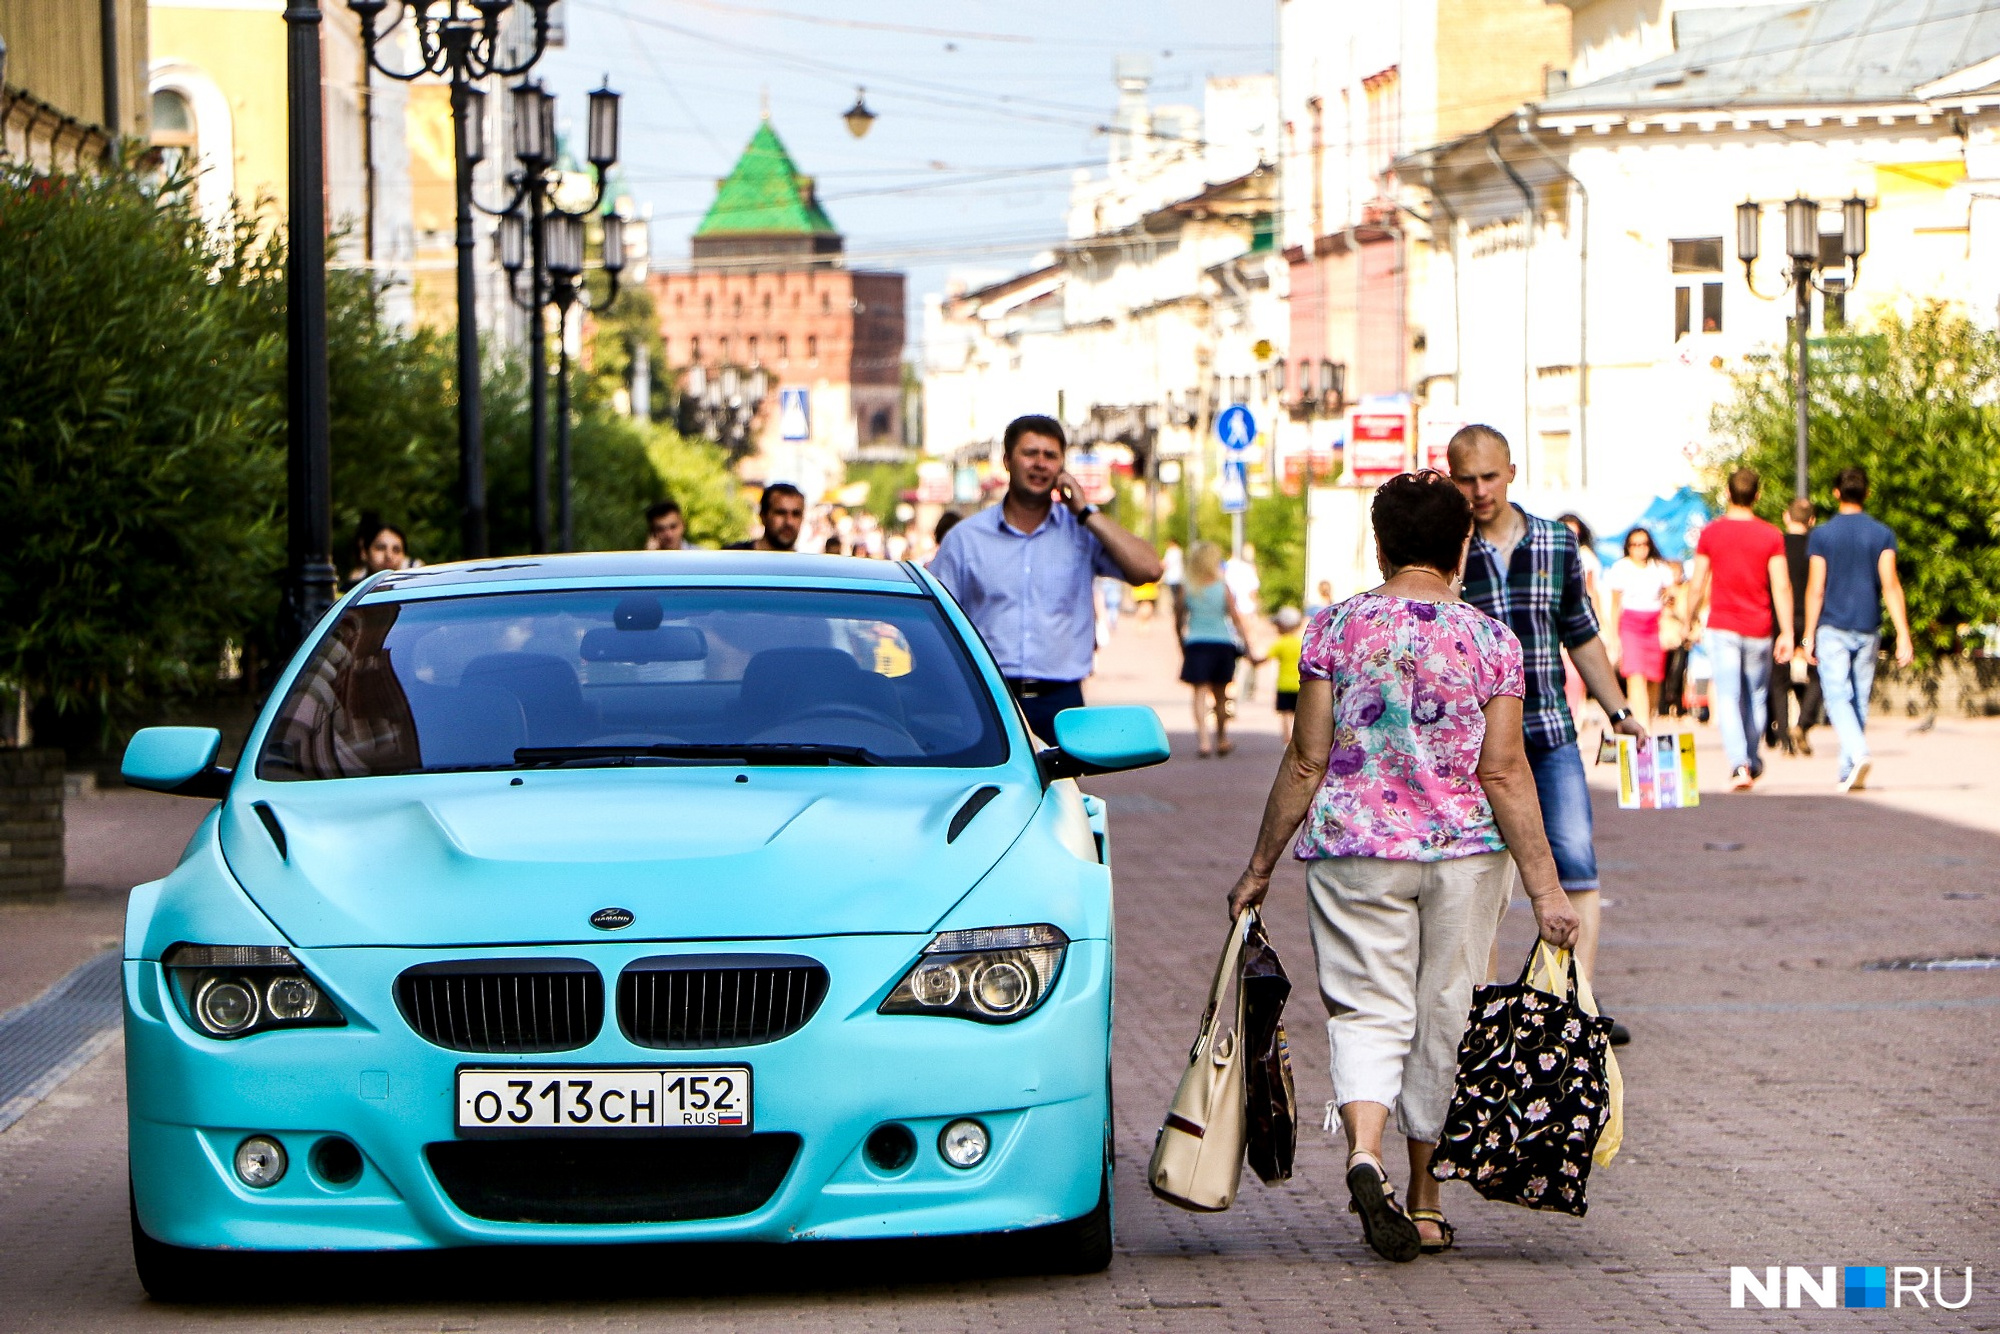 Главная пешеходная улица Нижнего Новгорода... Она точно пешеходная?